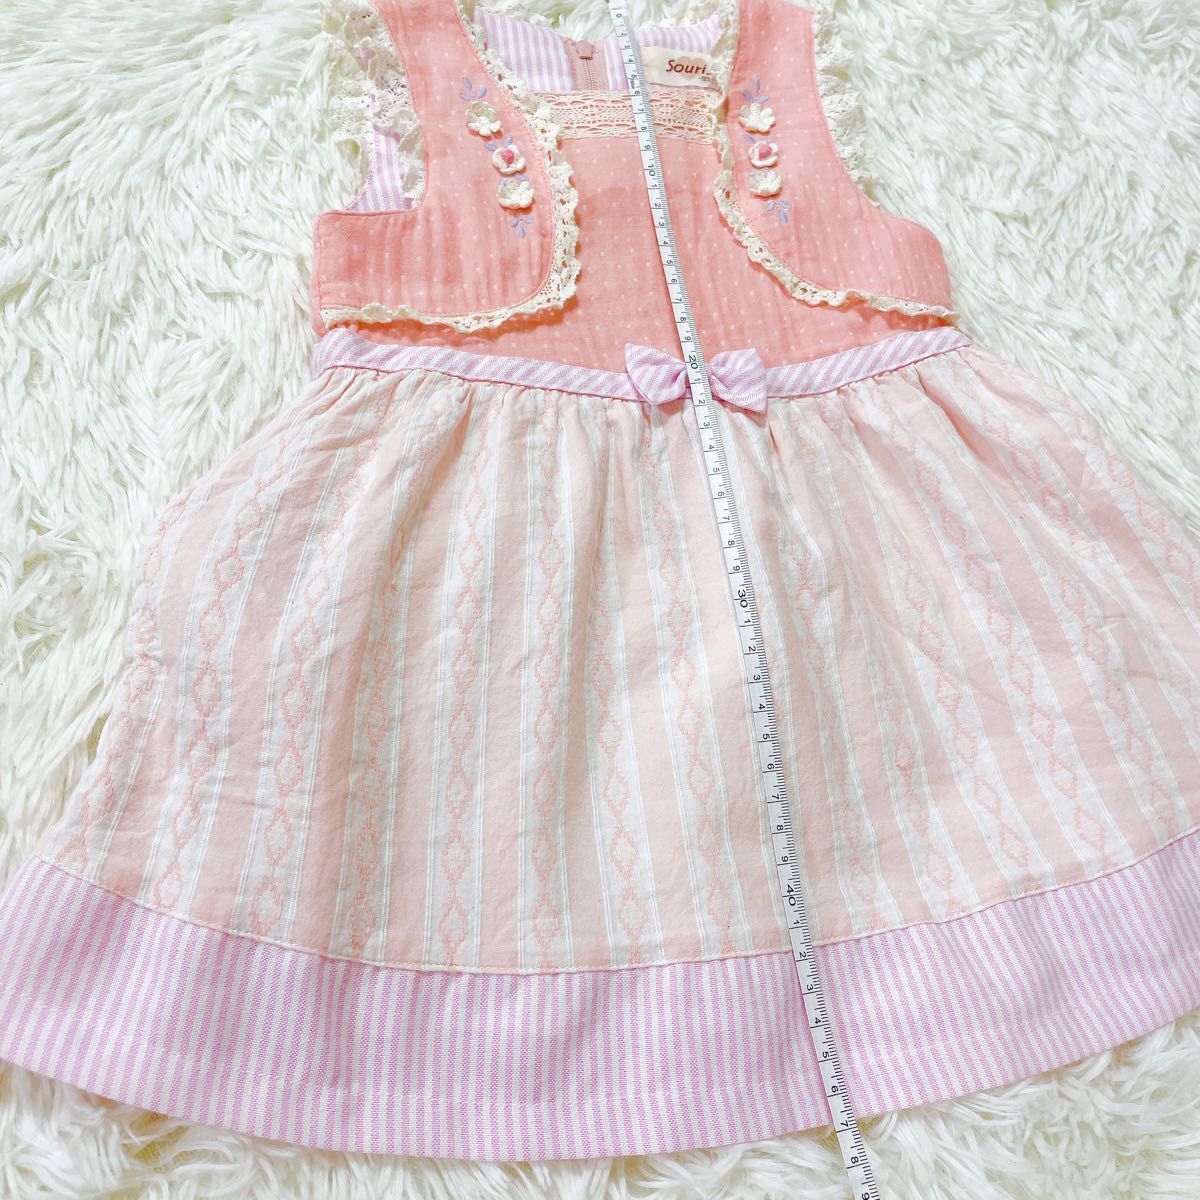 souris 90 ワンピース ミルキースーツ 女の子 夏服 子供服 スーリー ピンク ジャンパースカート キッズ ノースリーブの画像5